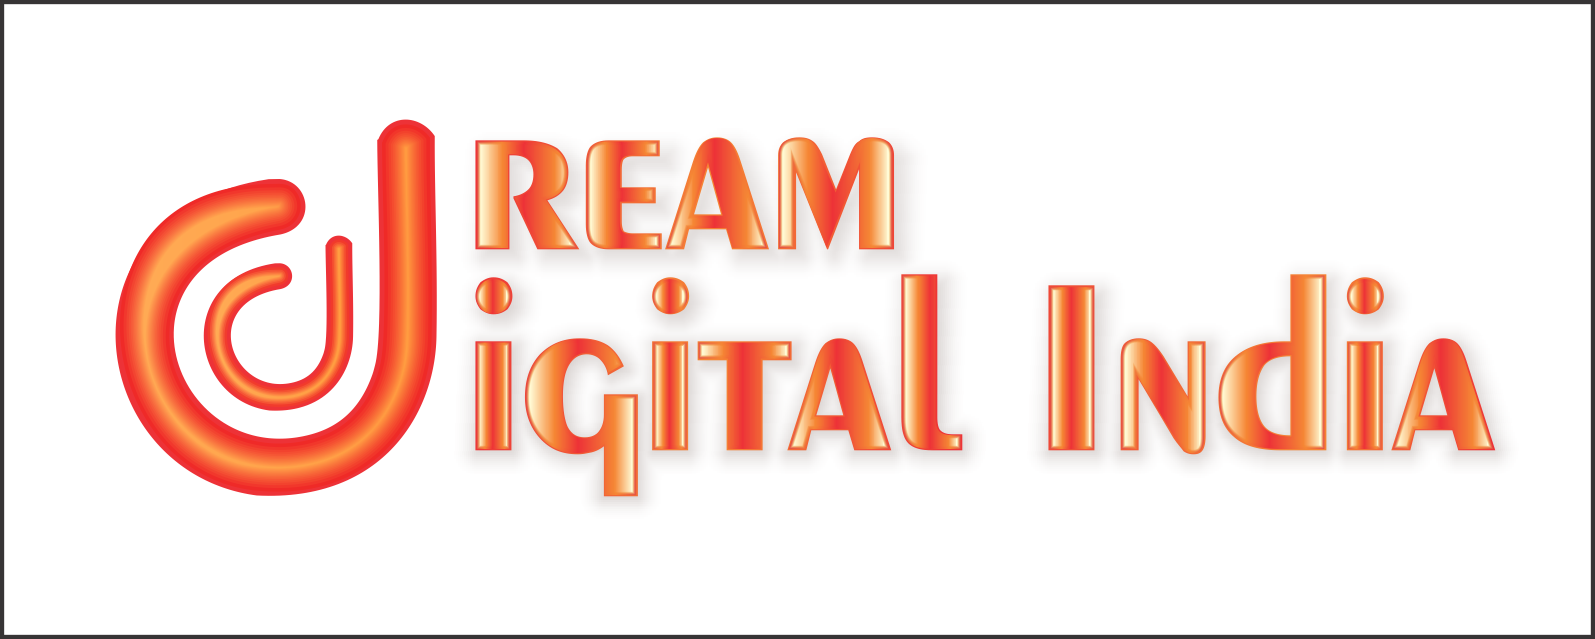 Dream Digital India